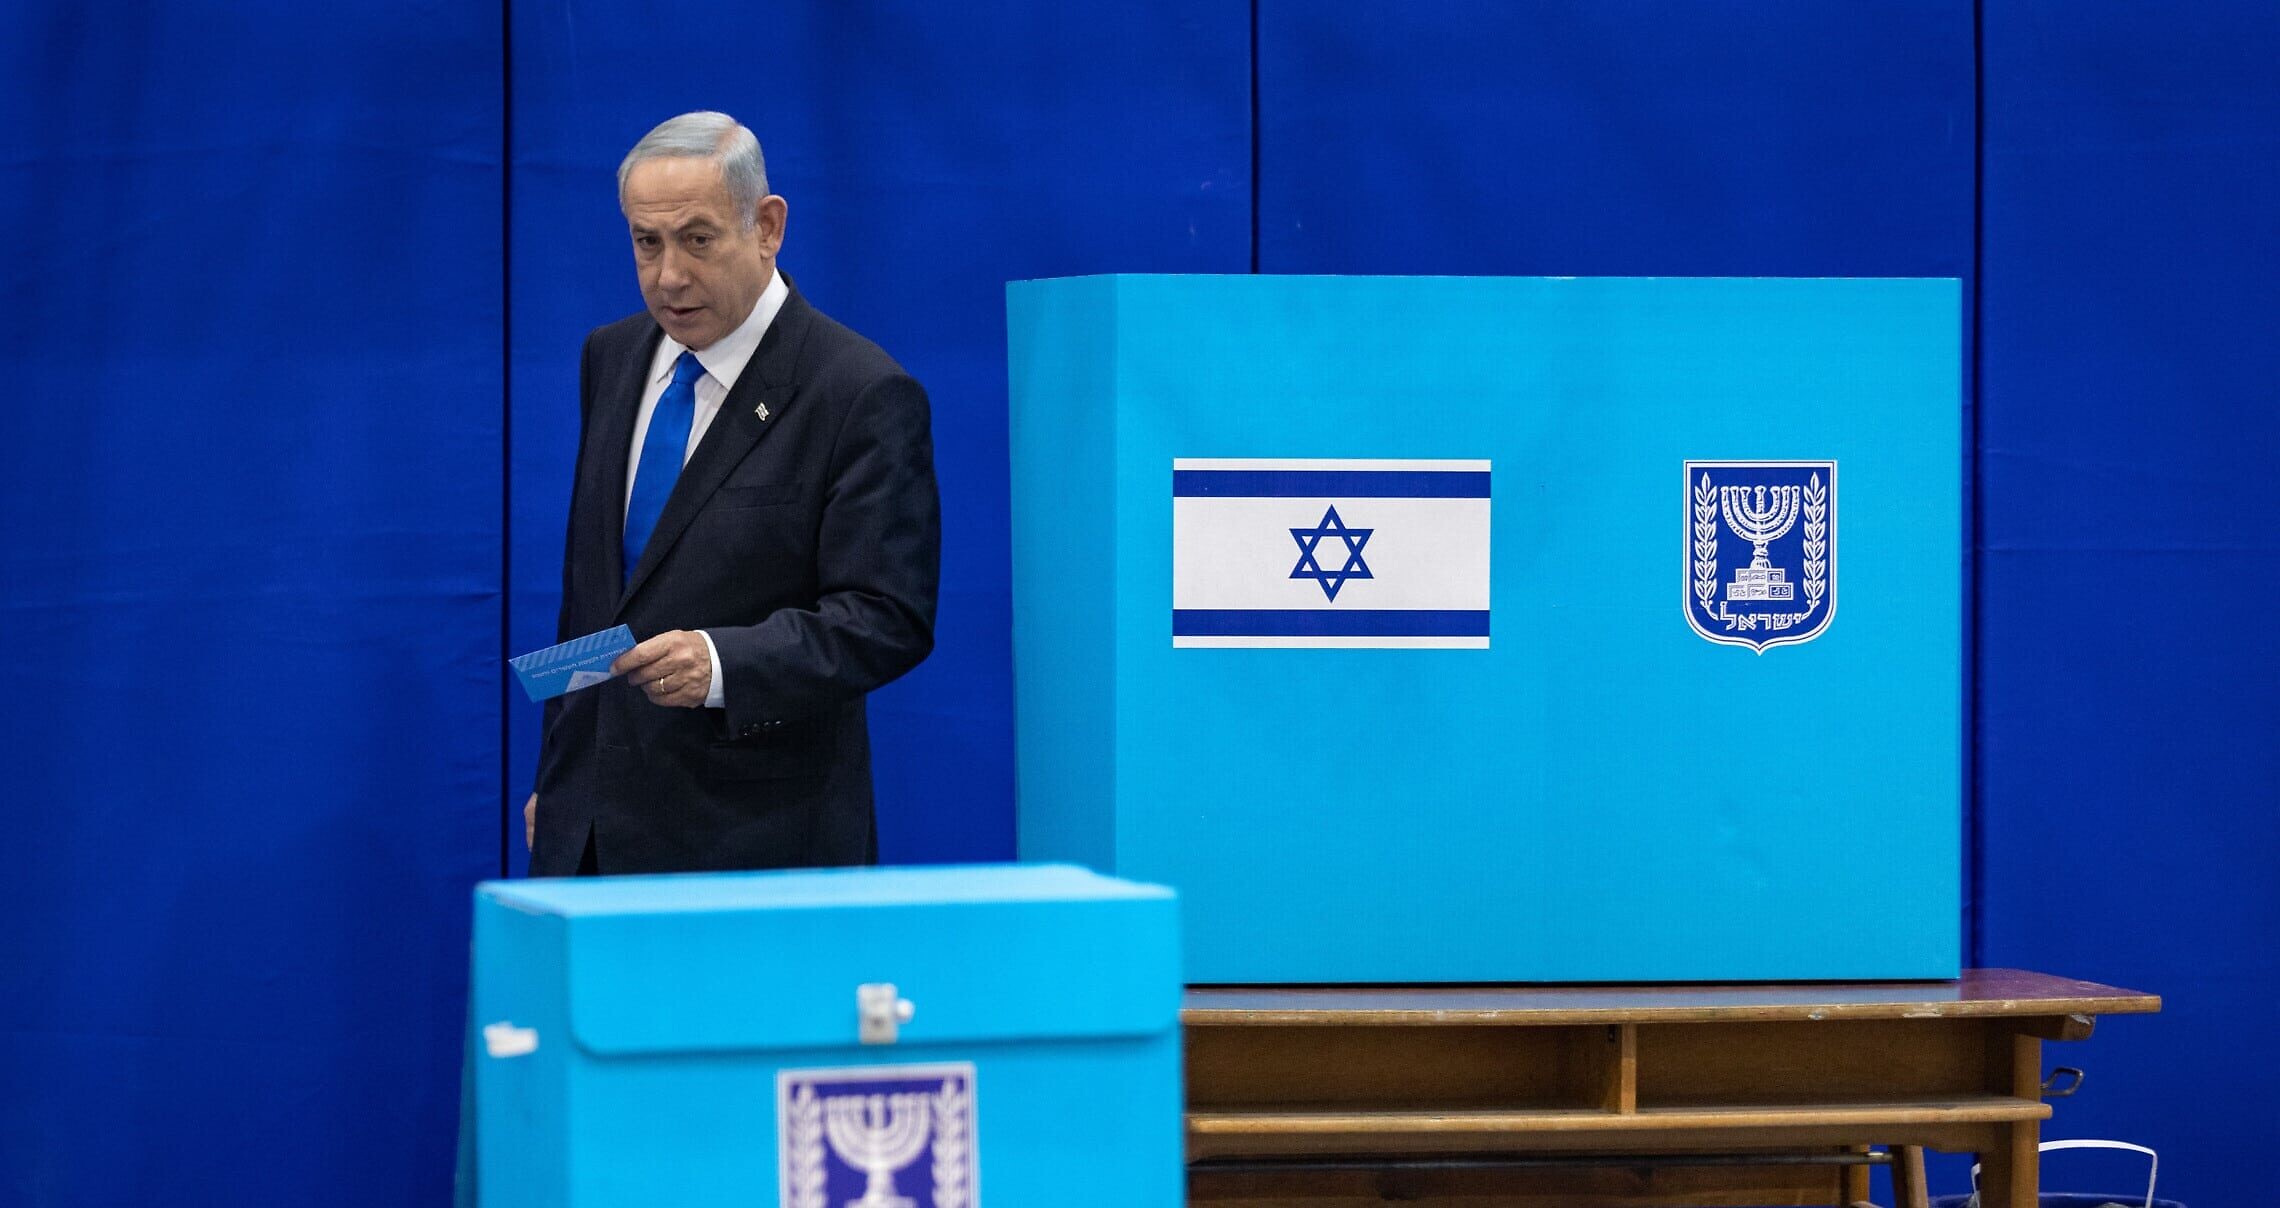 יושב ראש הליכוד, בנימין נתניהו, מצביע בבחירות בקלפי בירושלים, 1 בנובמבר 2022 (צילום: Olivier FitoussiFlash90)